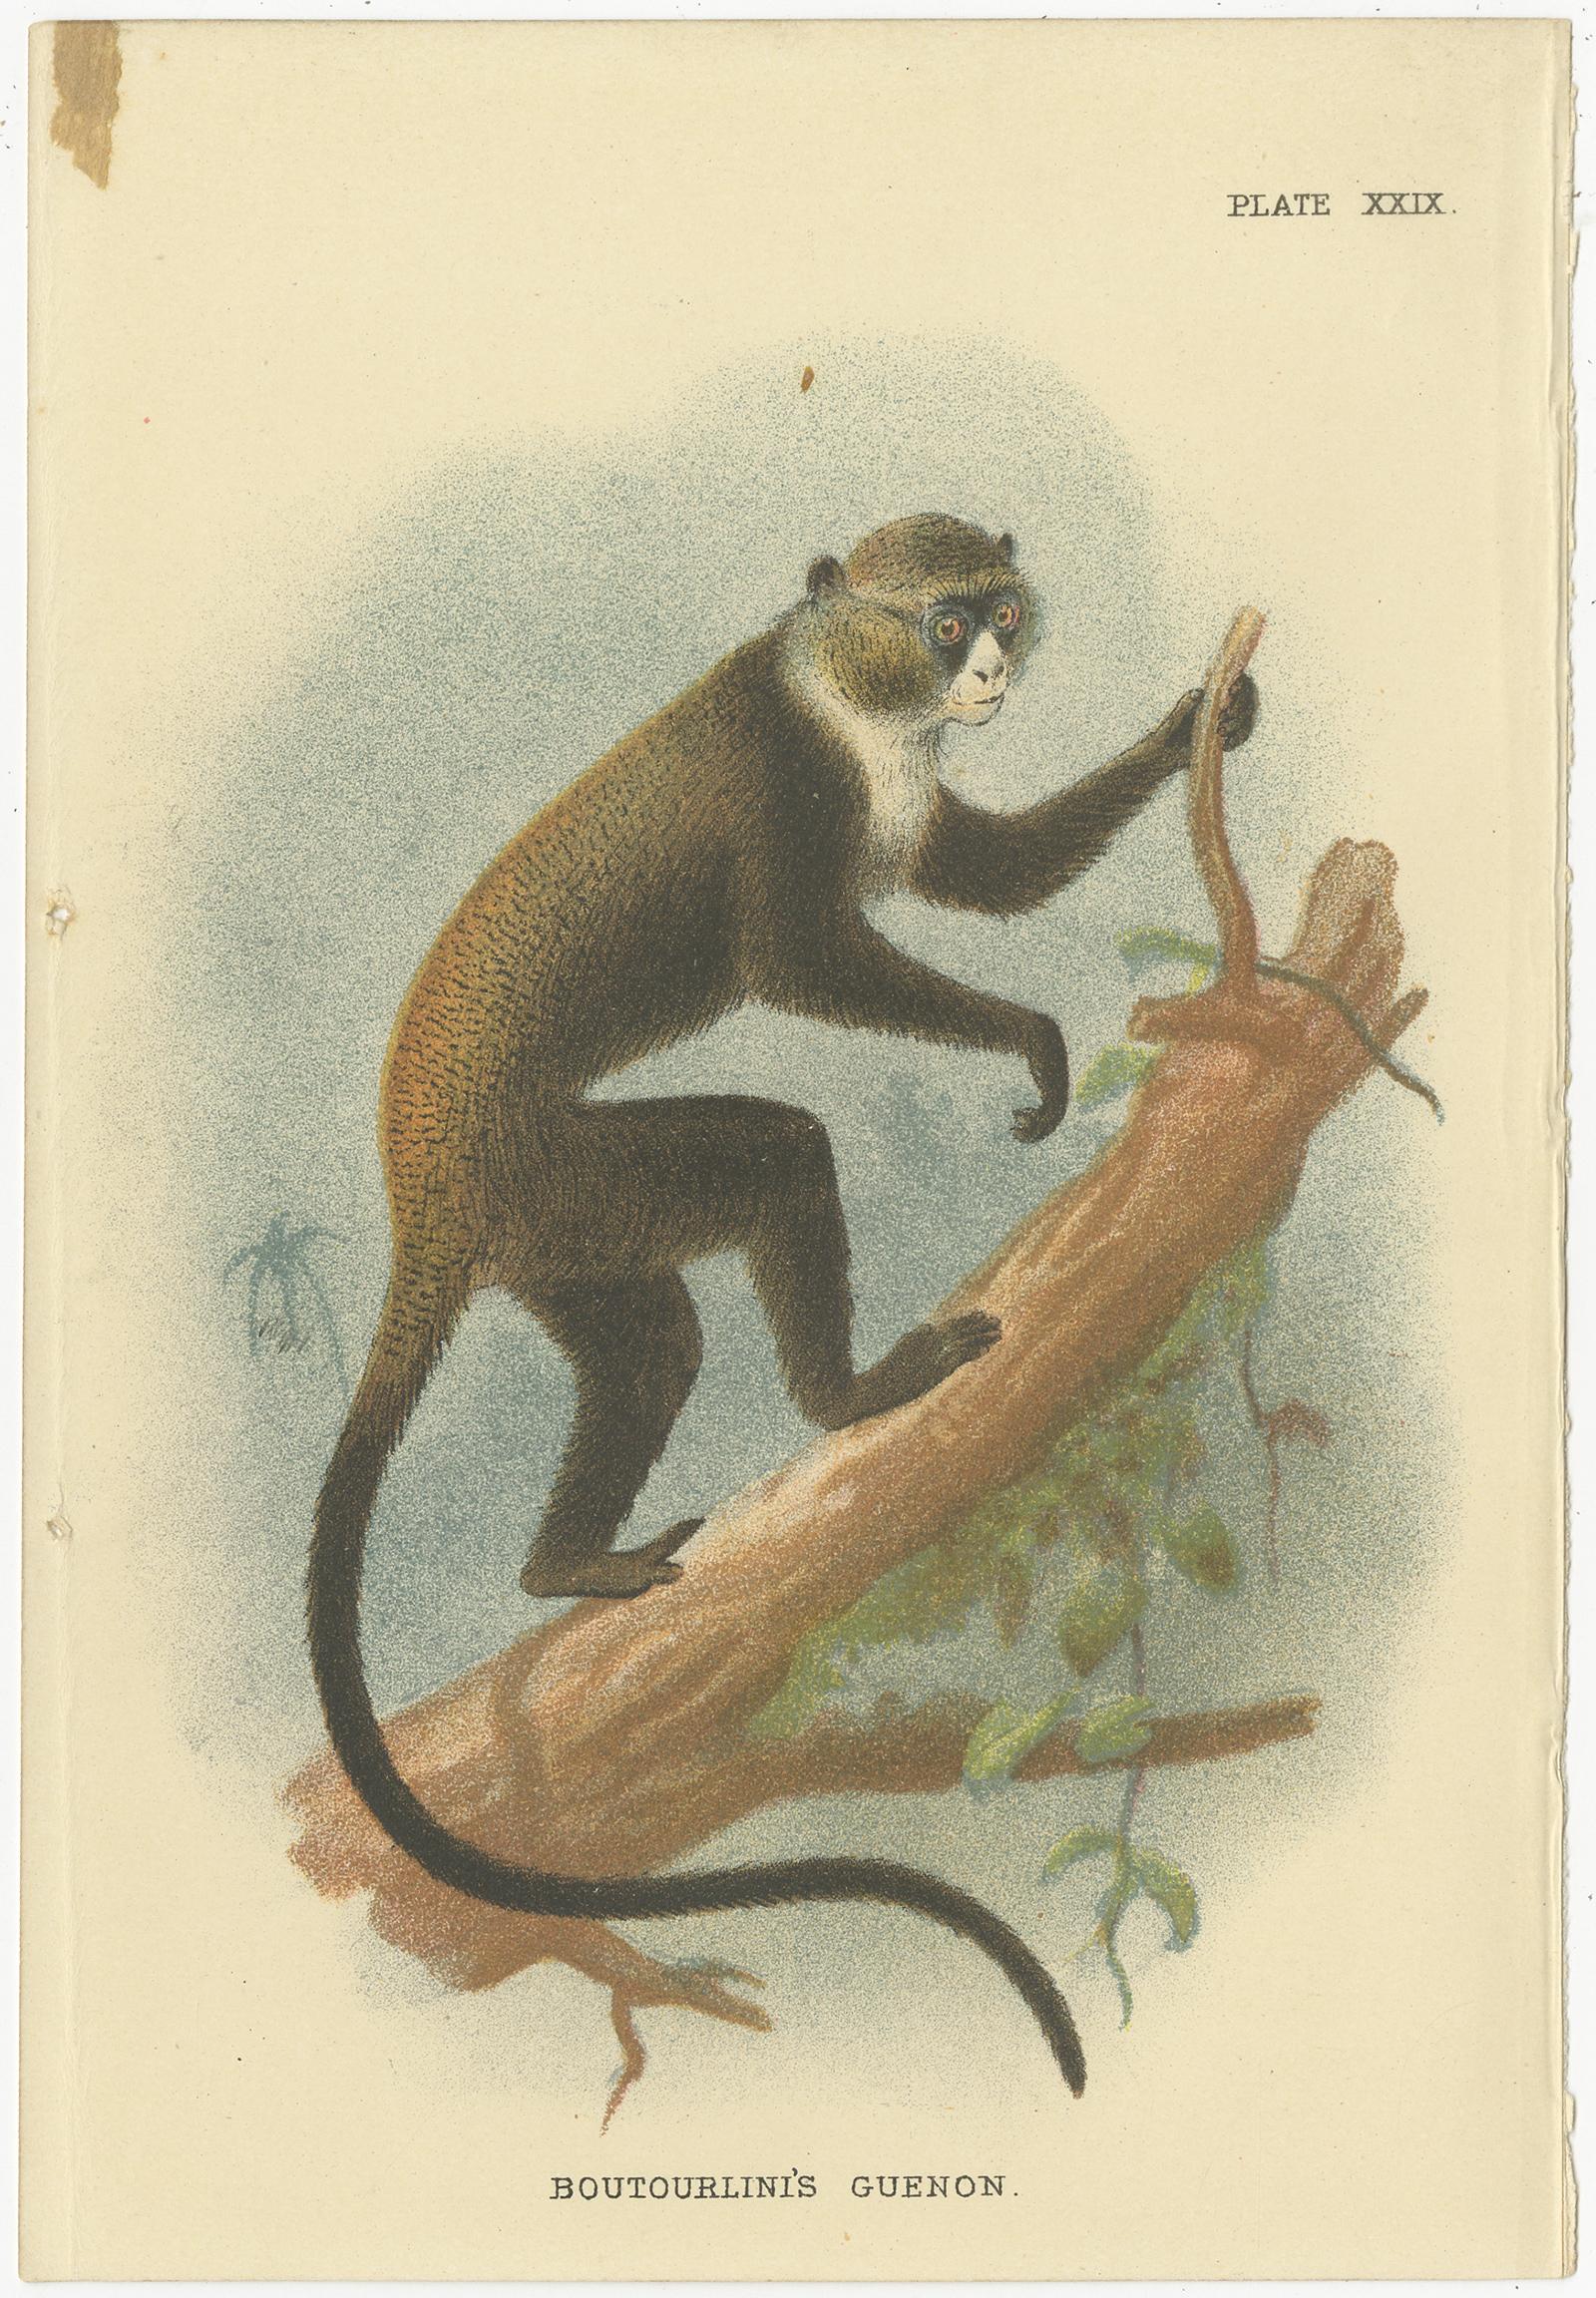 guenon monkey price